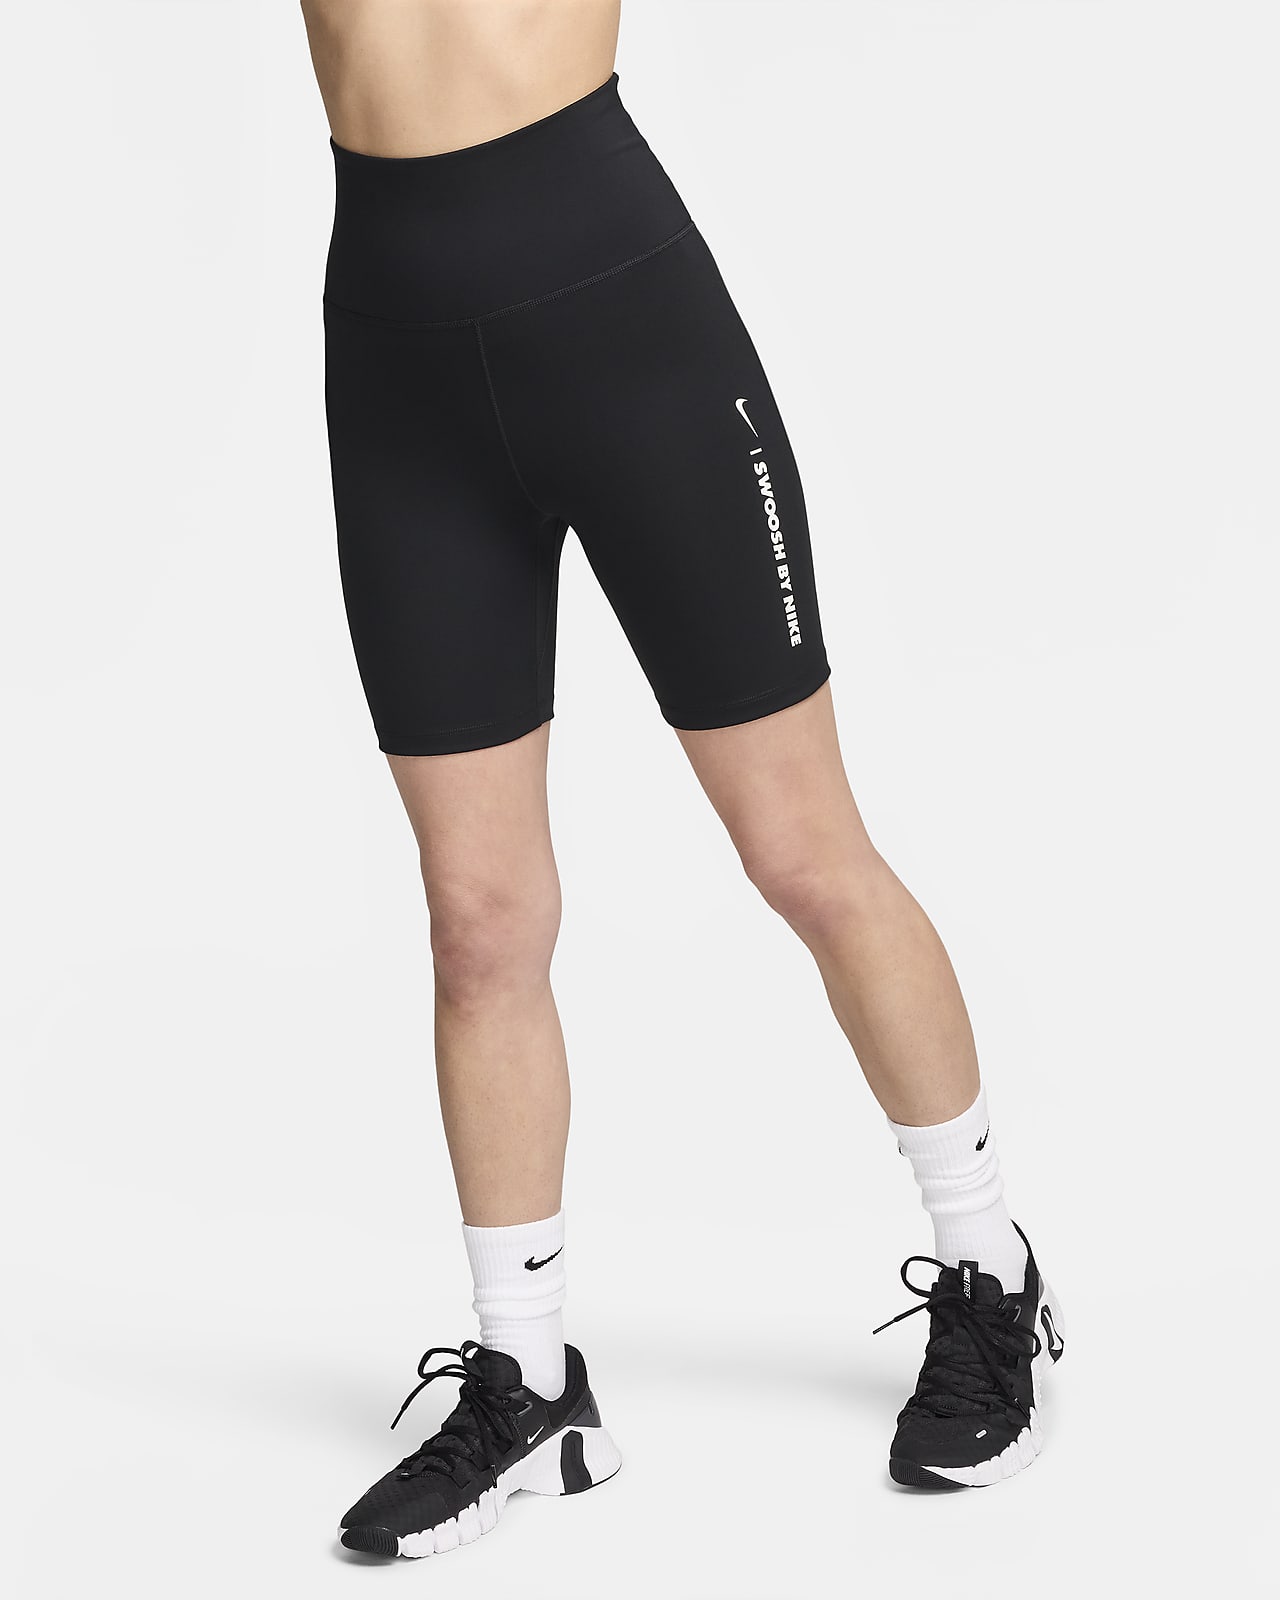 Højtaljede Nike One-cykelshorts (18 cm) til kvinder